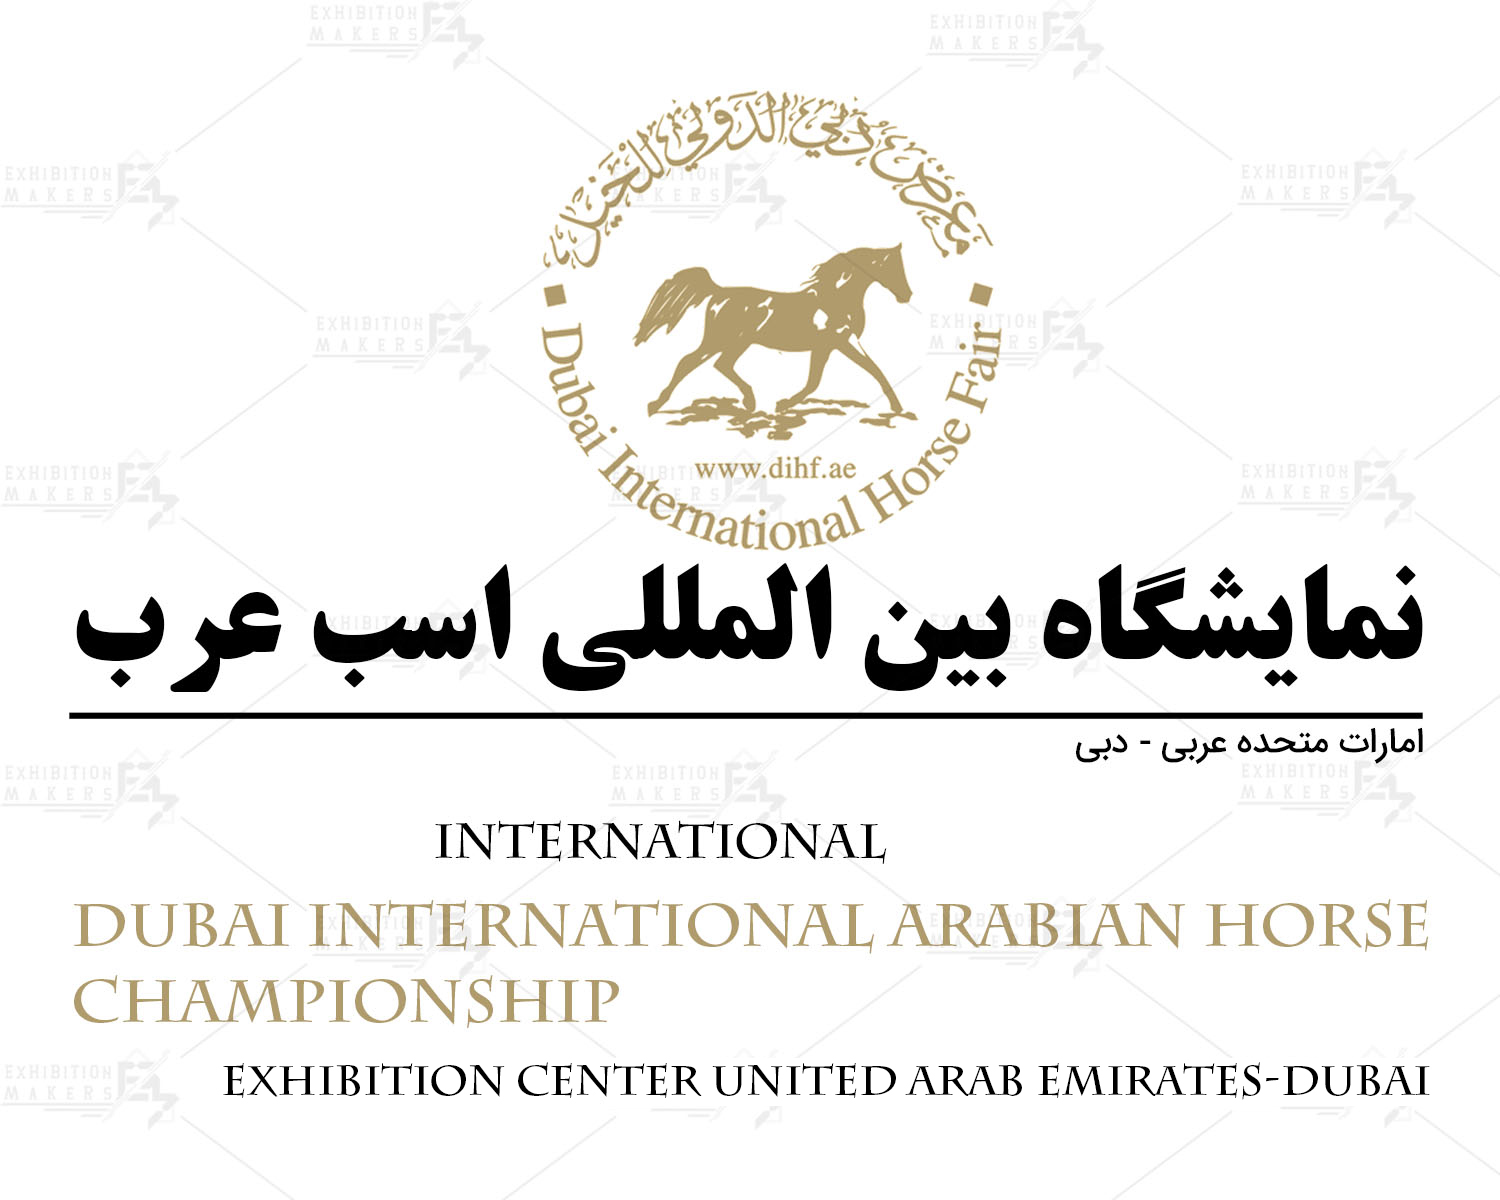 نمایشگاه بین المللی اسب عرب امارات متحده عربی- دبی